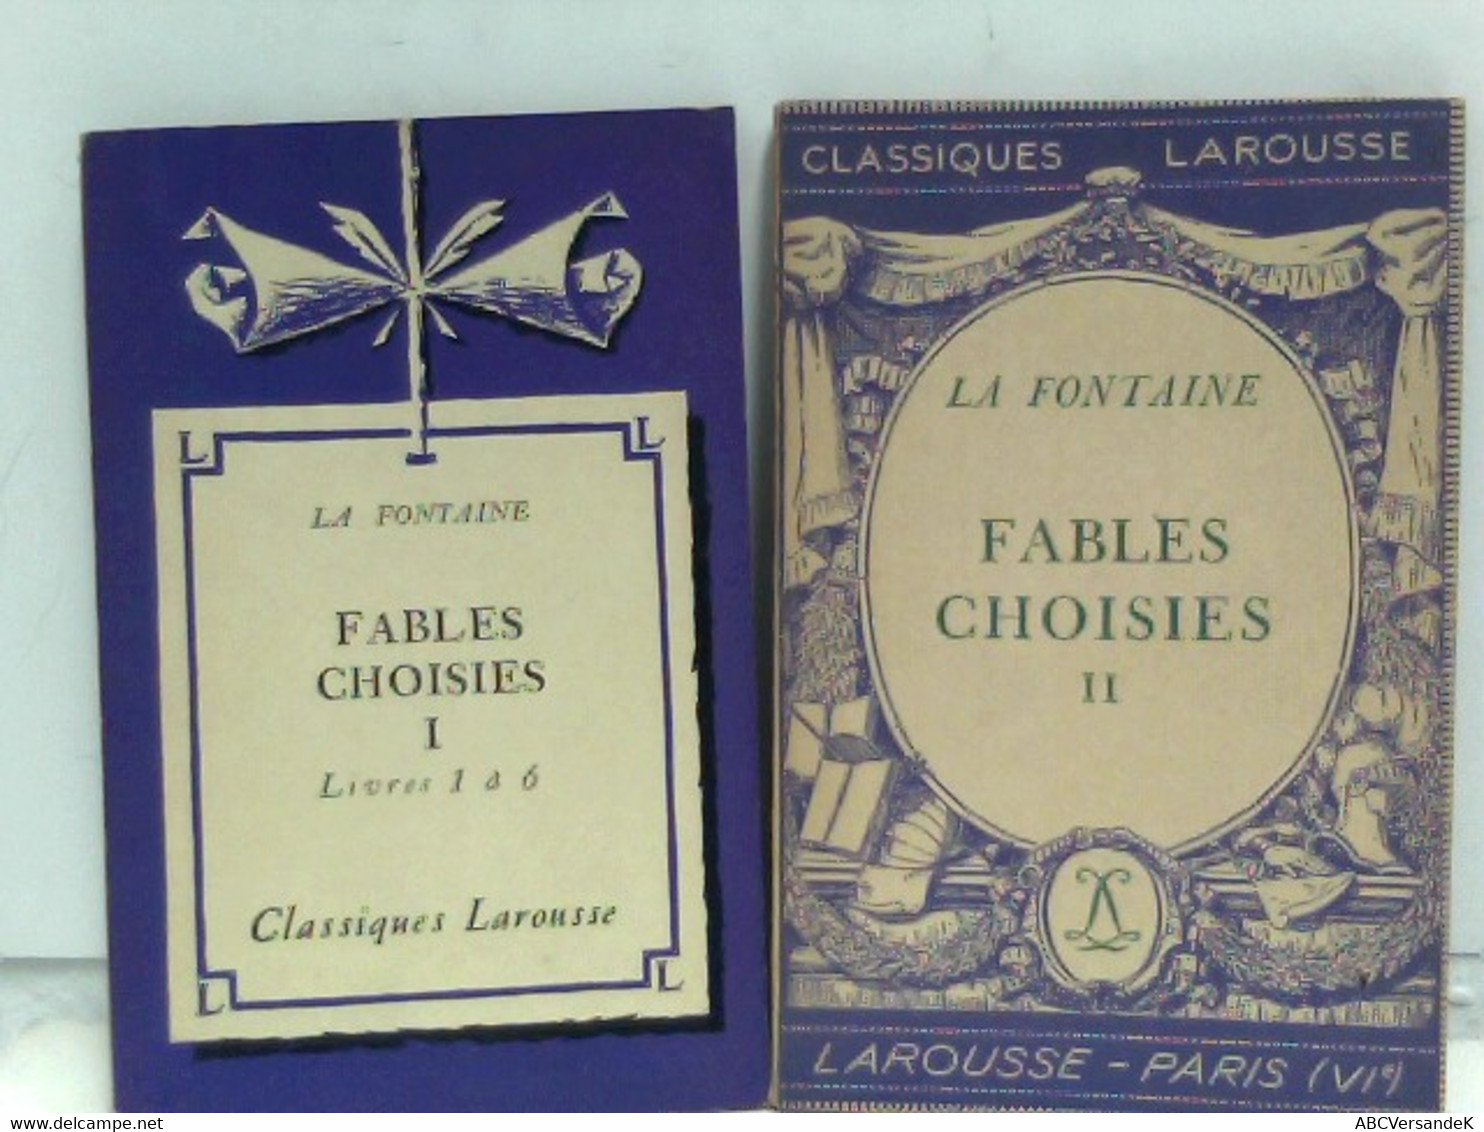 Fables Choisies - Bd. I: Livres 1 à 6, Bd. II: Fables Choisies - German Authors